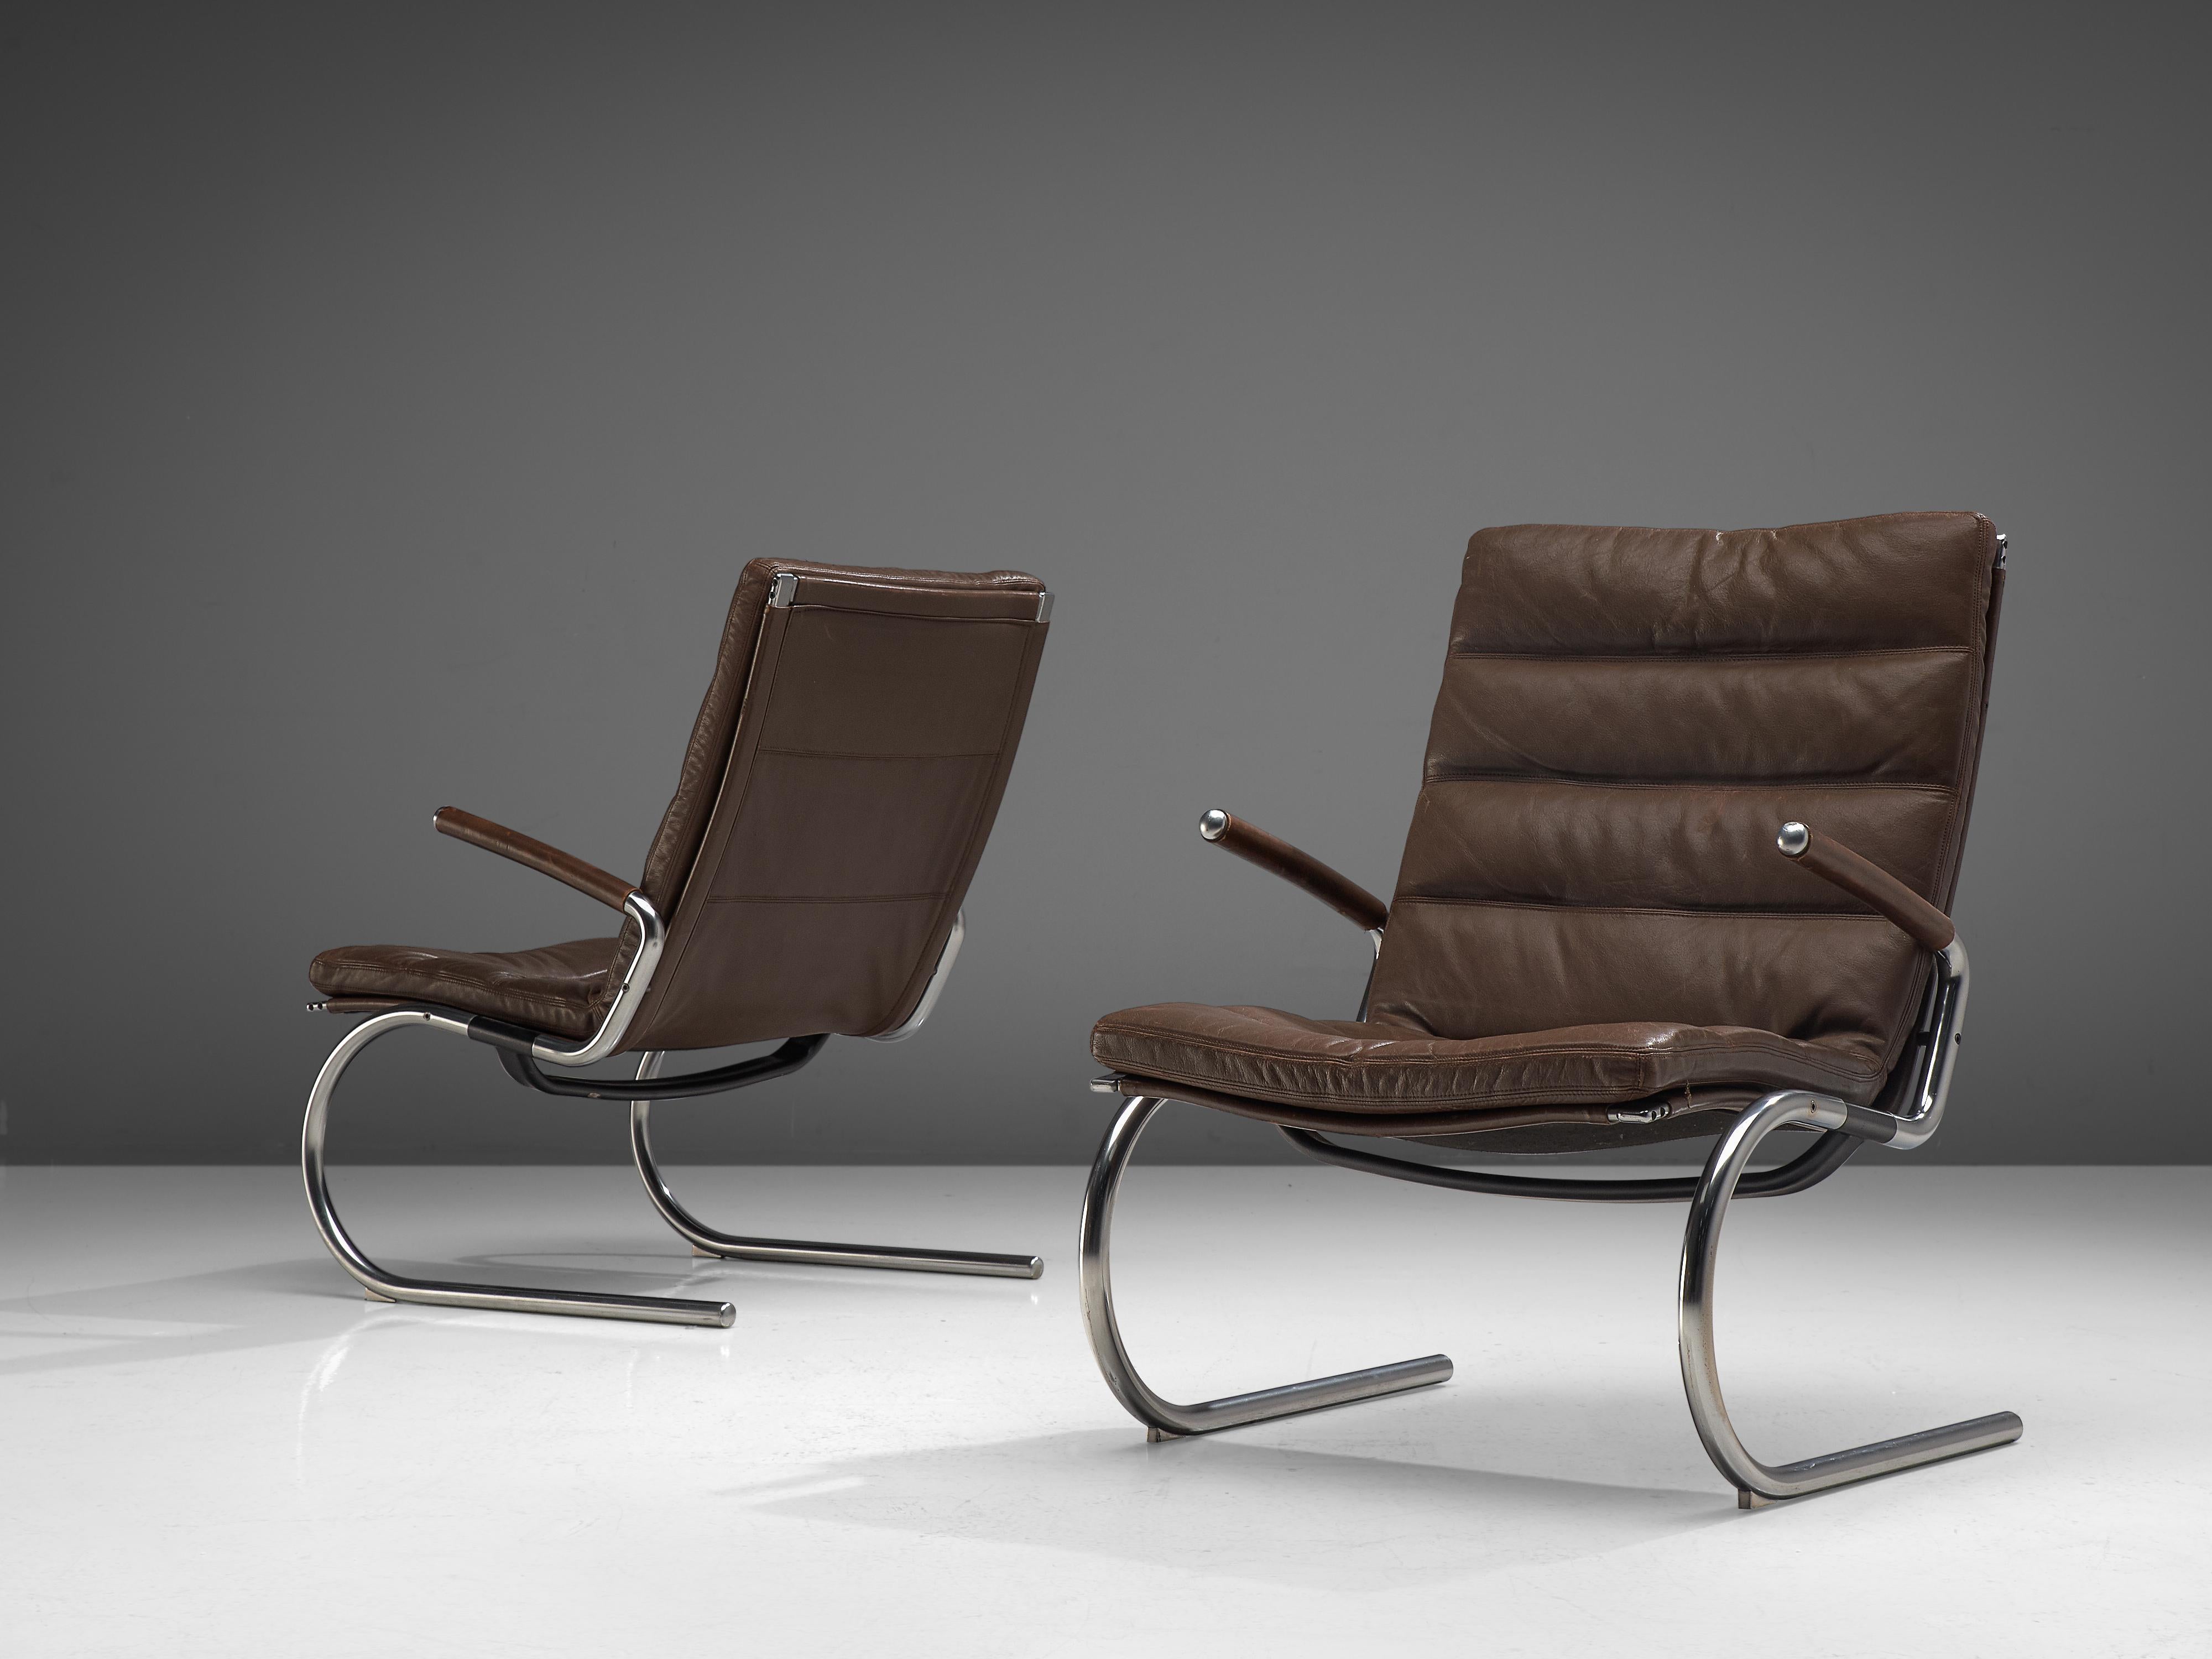 Jørgen Kastholm, paire de chaises longues, métal et cuir, Danemark, années 1960.

Cette paire de fauteuils modernes a été conçue par Jørgen Kastholm dans les années 1960. Elles sont réalisées en acier tubulaire et en cuir avec un siège en forme de